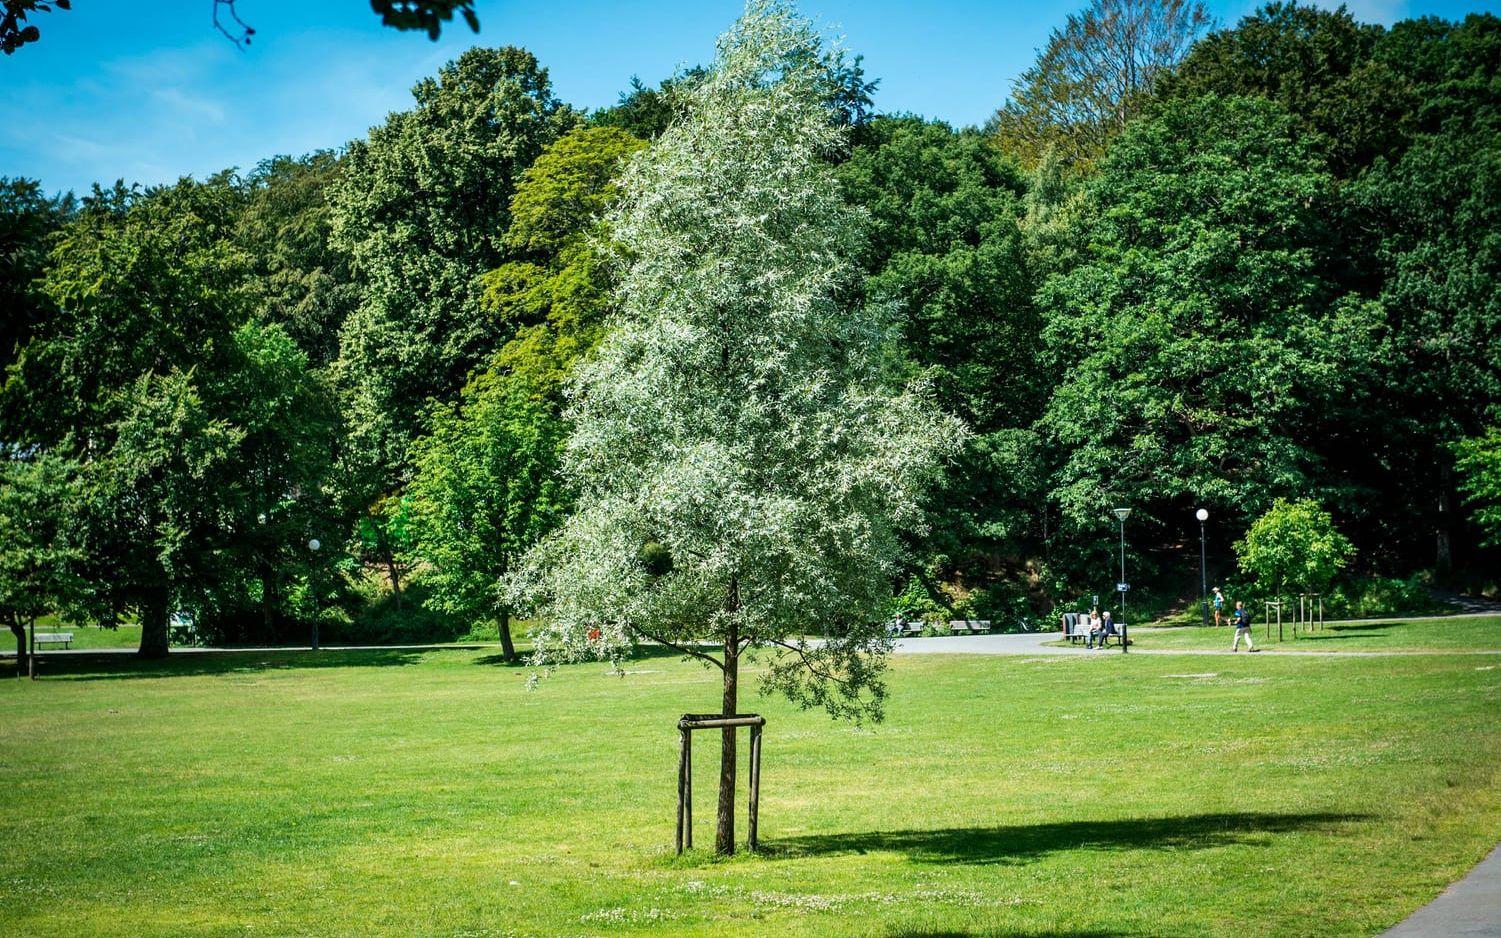 Utveckling pågår, inne i parken har nya träd som ska ge mer skugga planerats. Bild: Olof Ohlsson